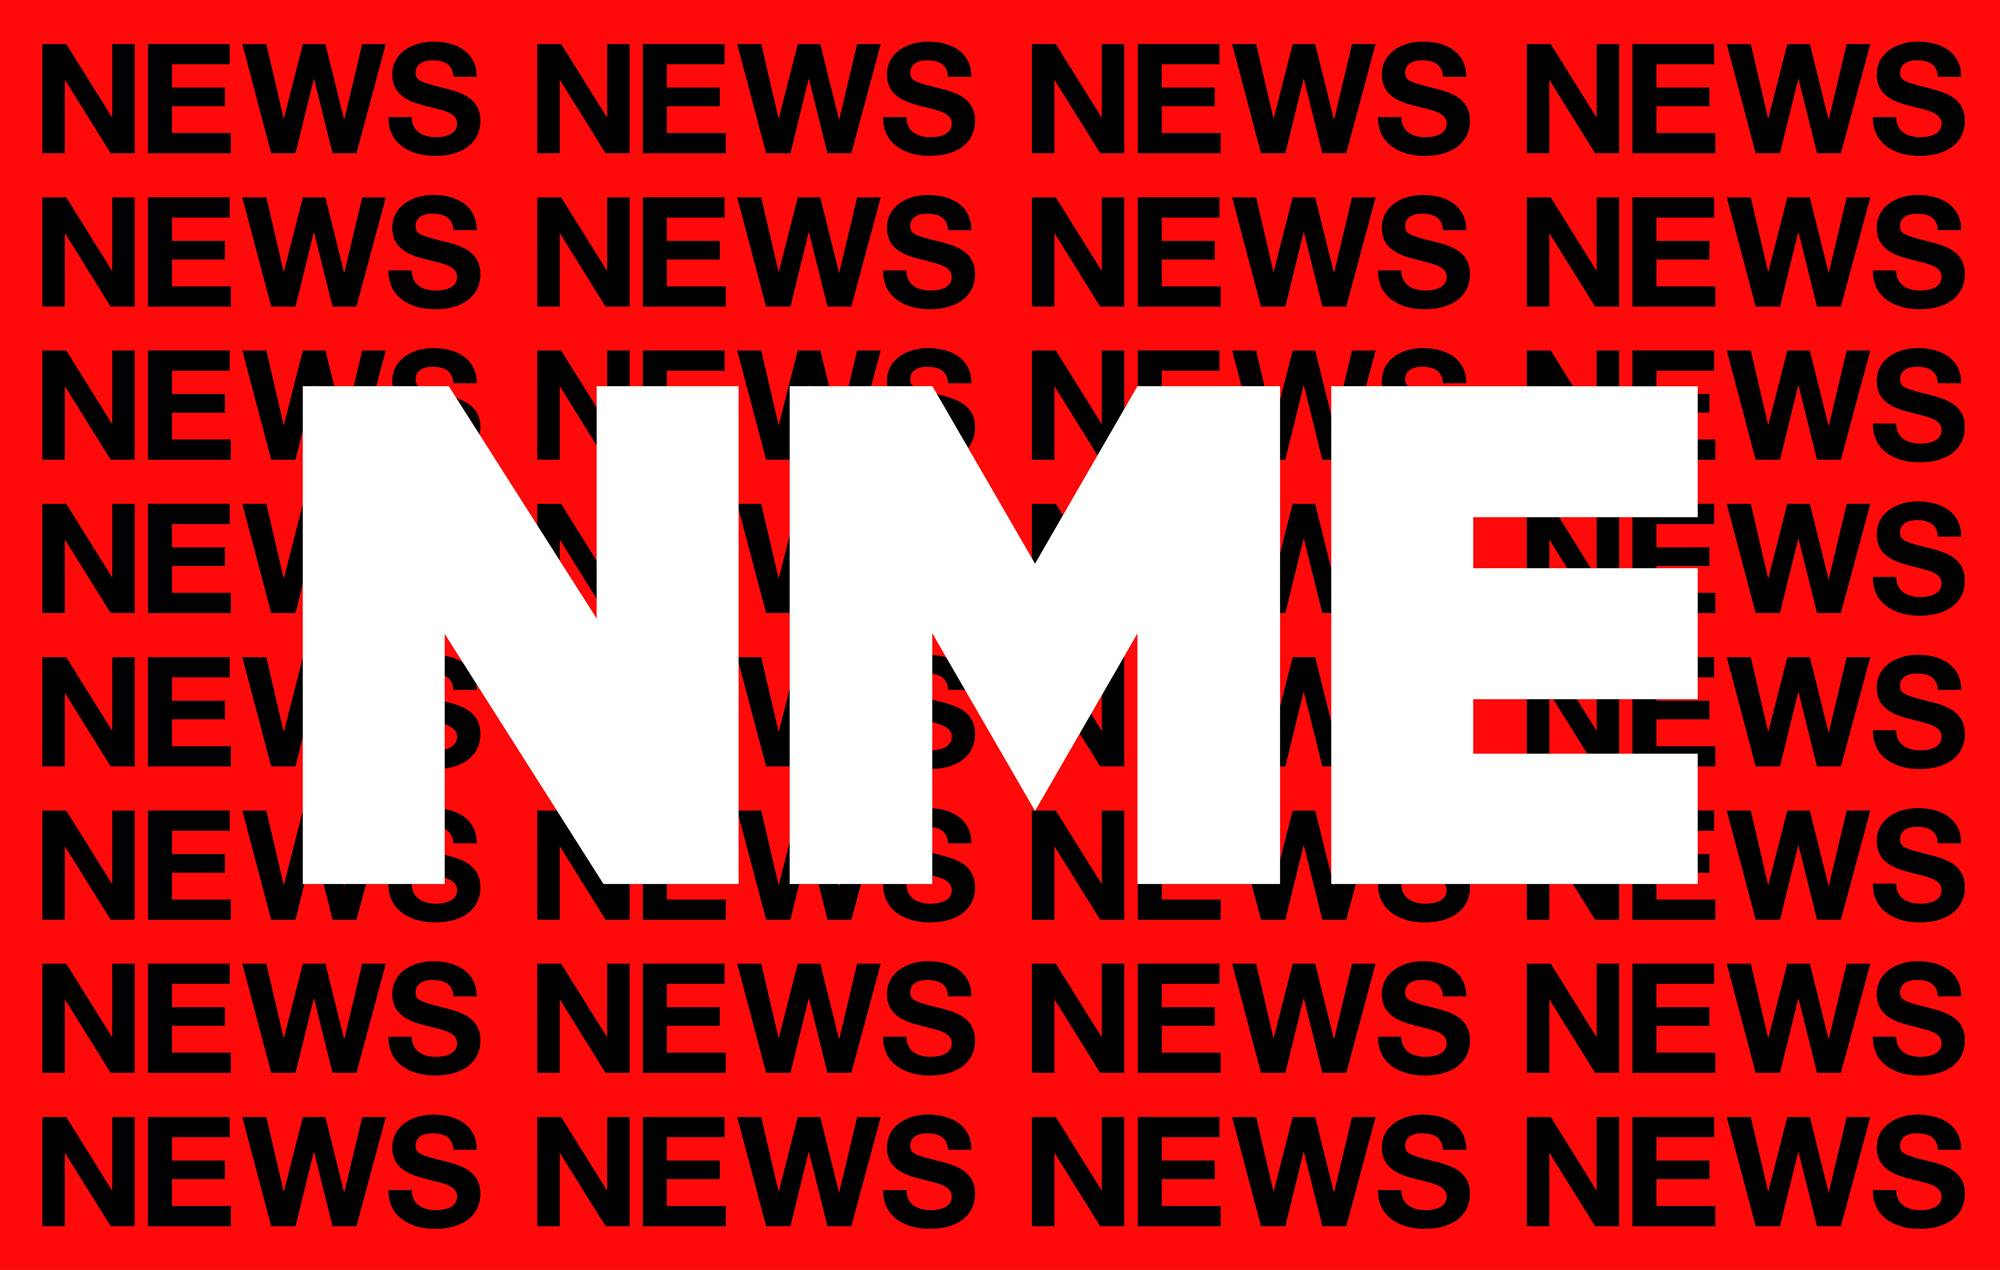 NME News